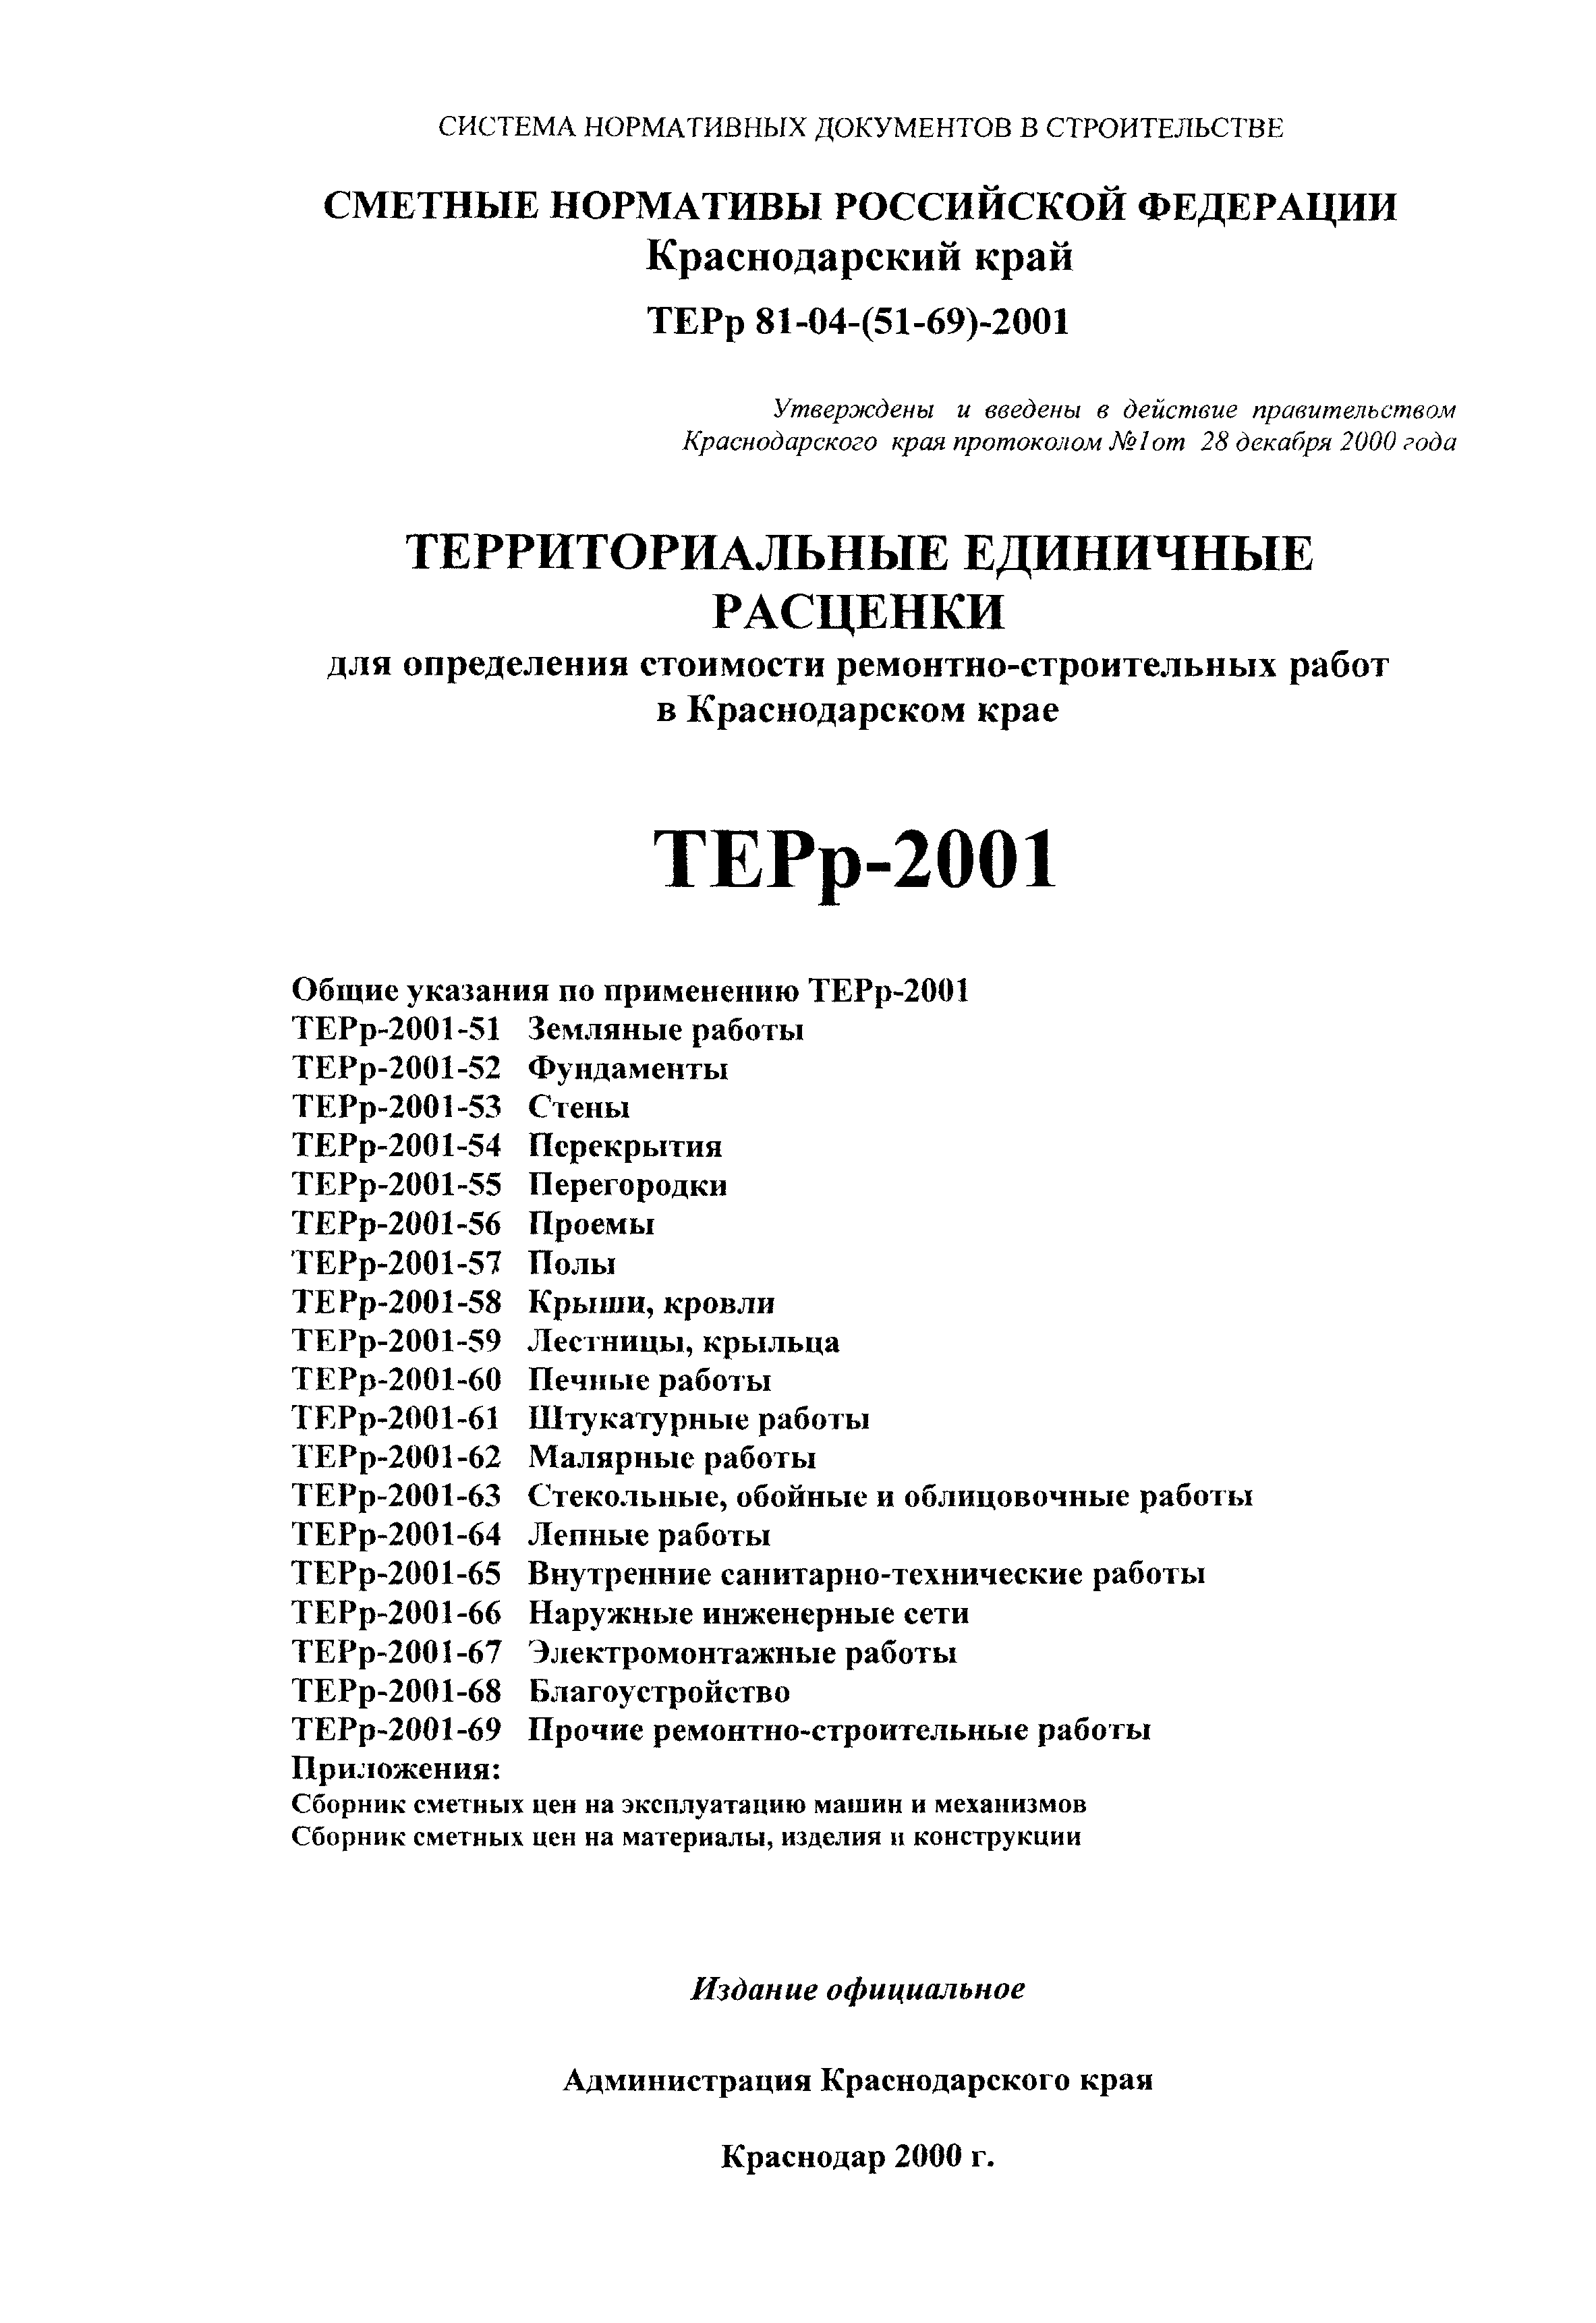 ТЕРр Краснодарского края 2001